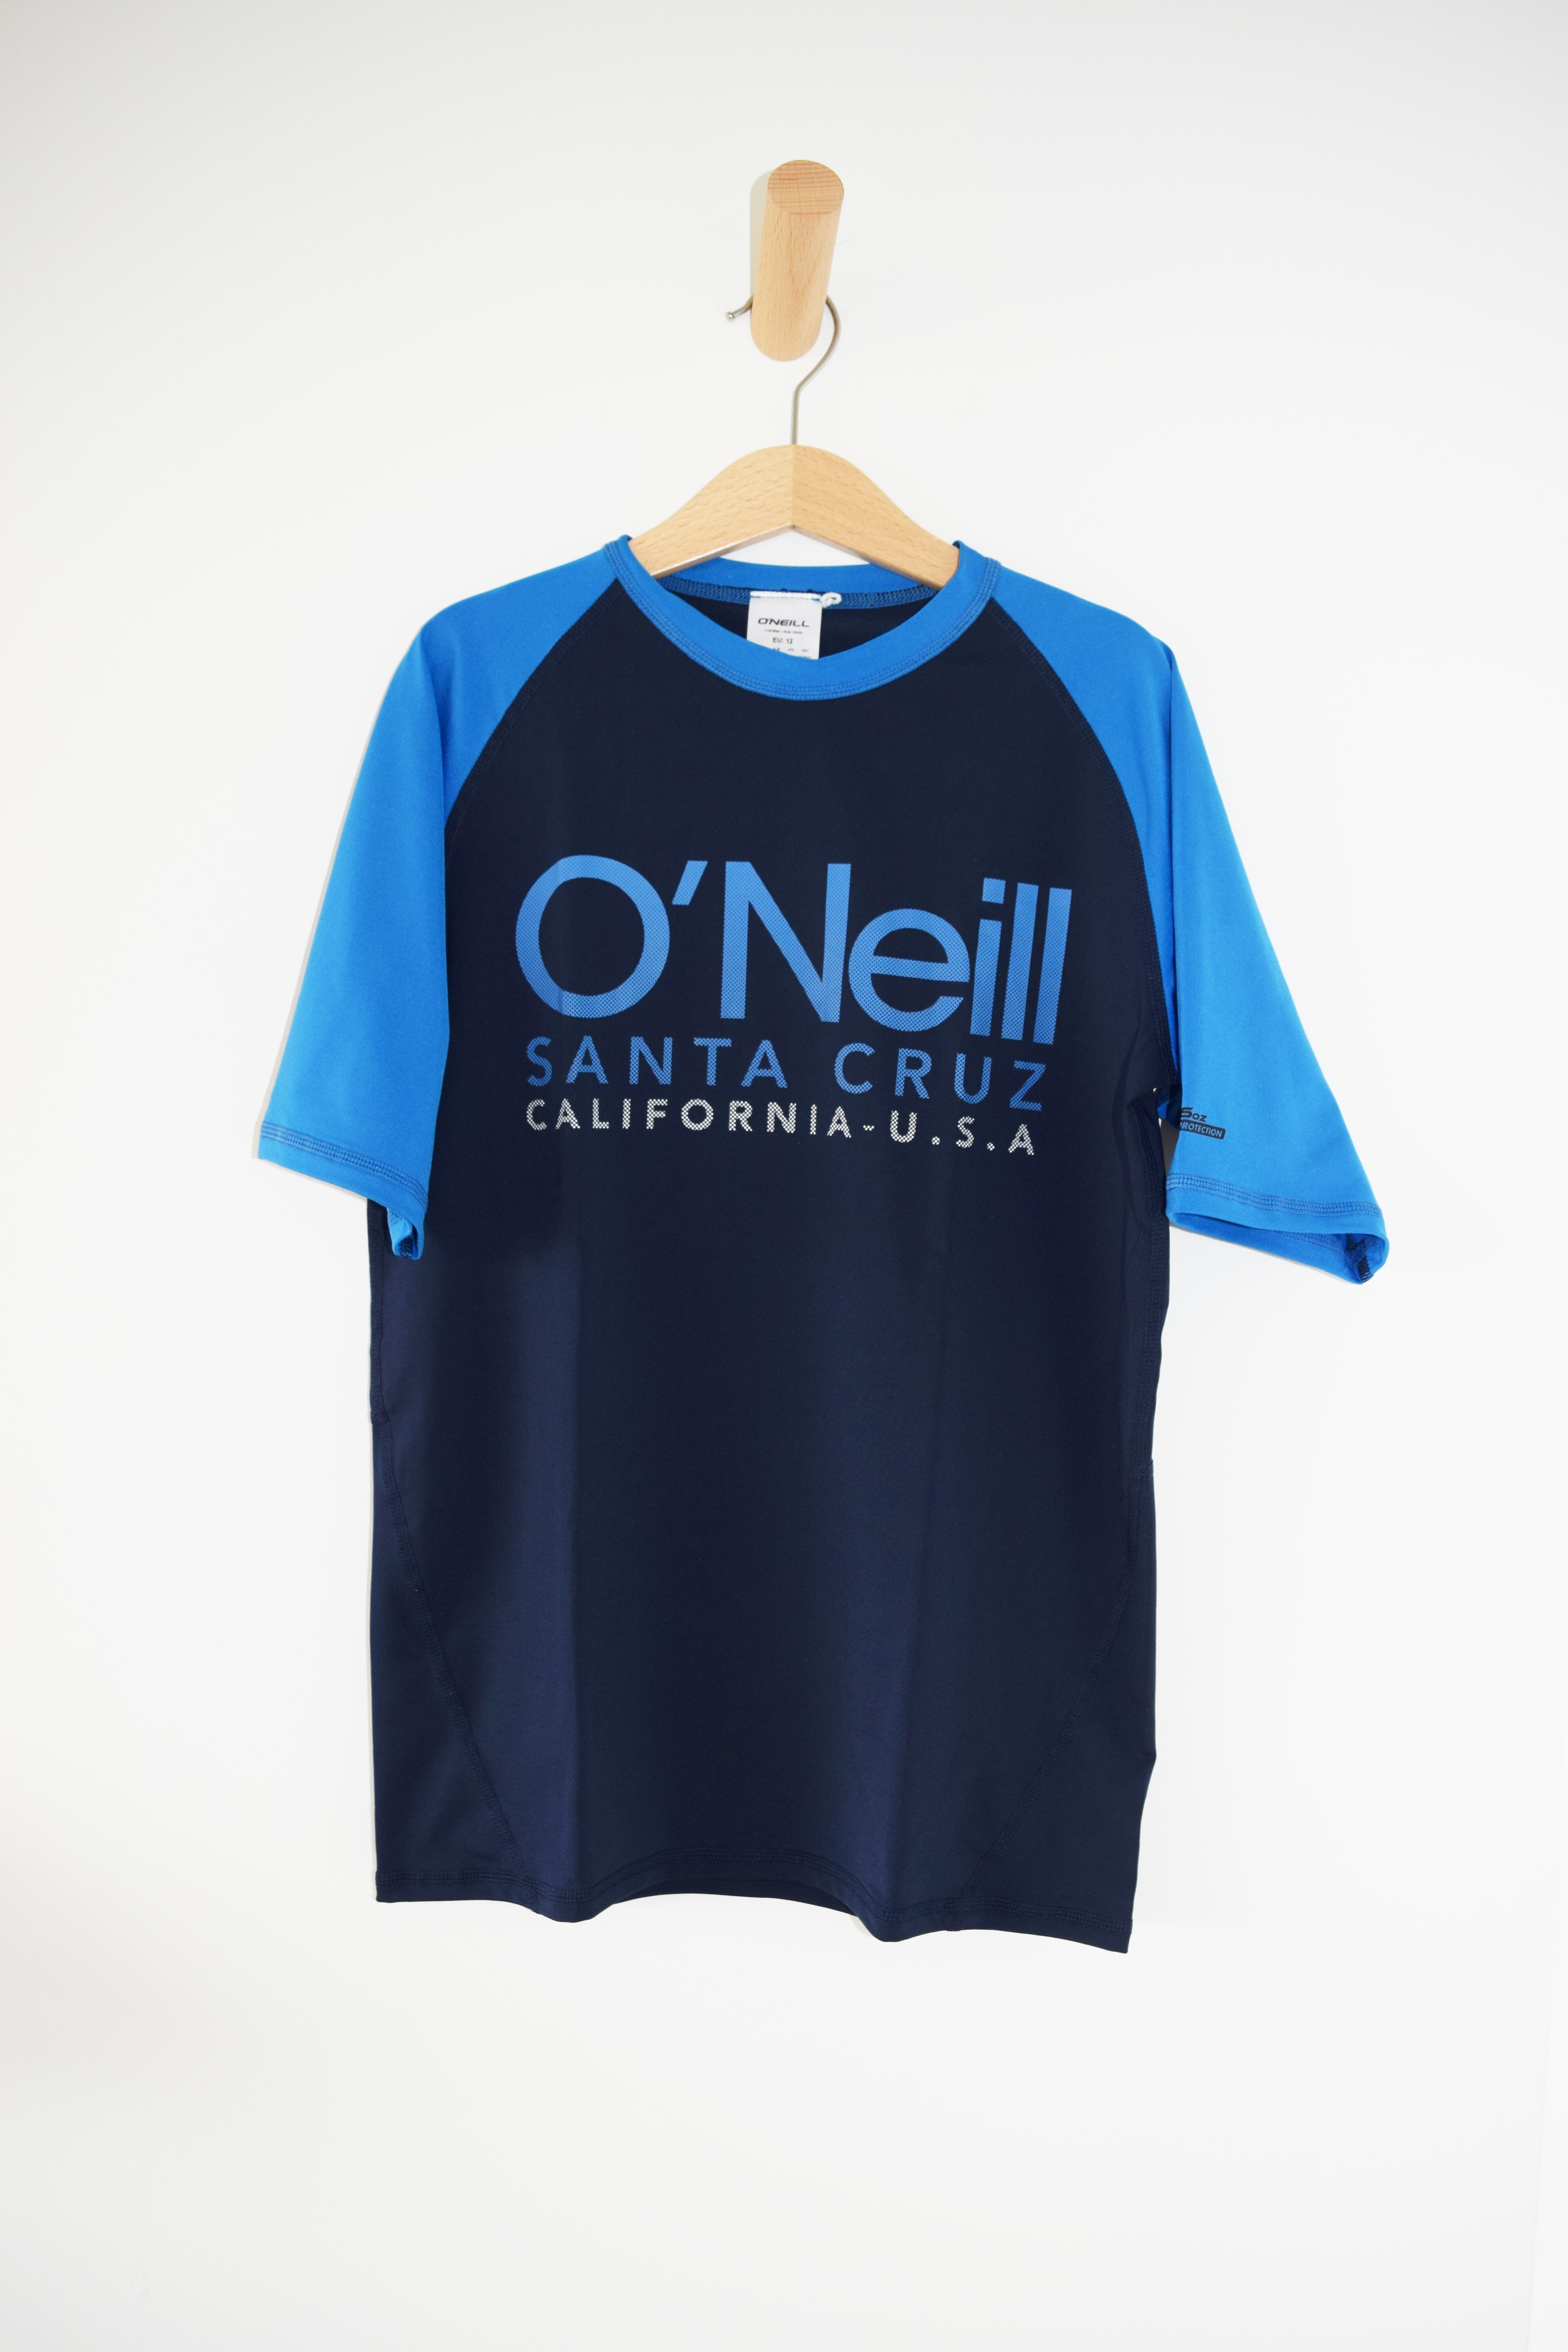 Zwem t-shirt, O'neill, 12 jaar 